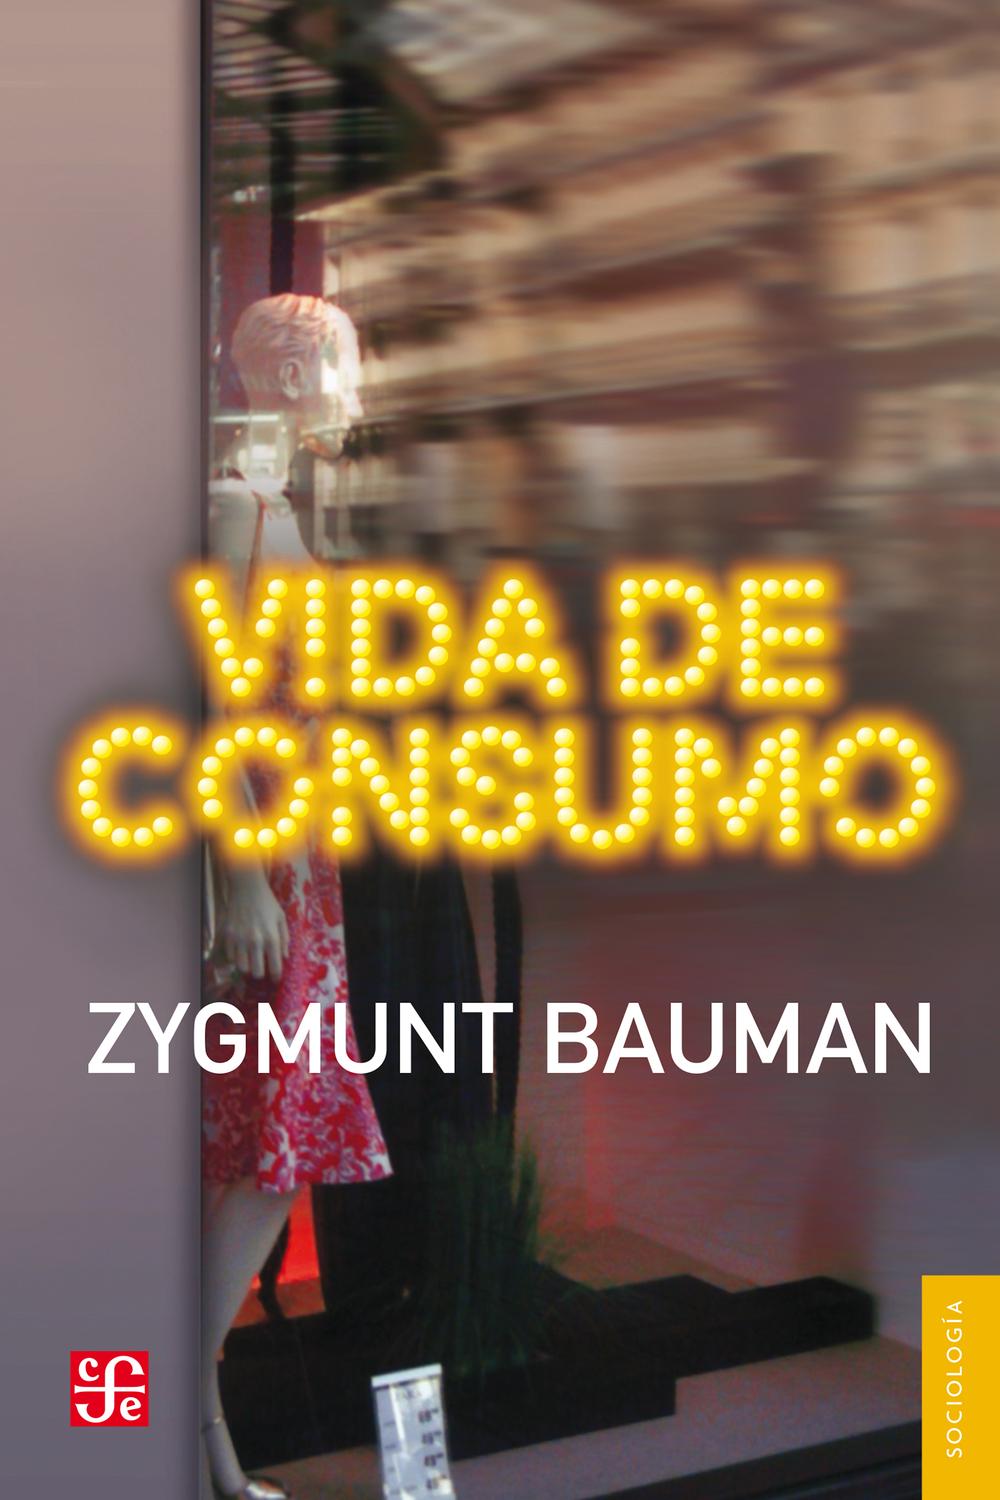 Vida de consumo - Zygmunt Bauman, Mirta Rosenberg, Jaime Arrambide